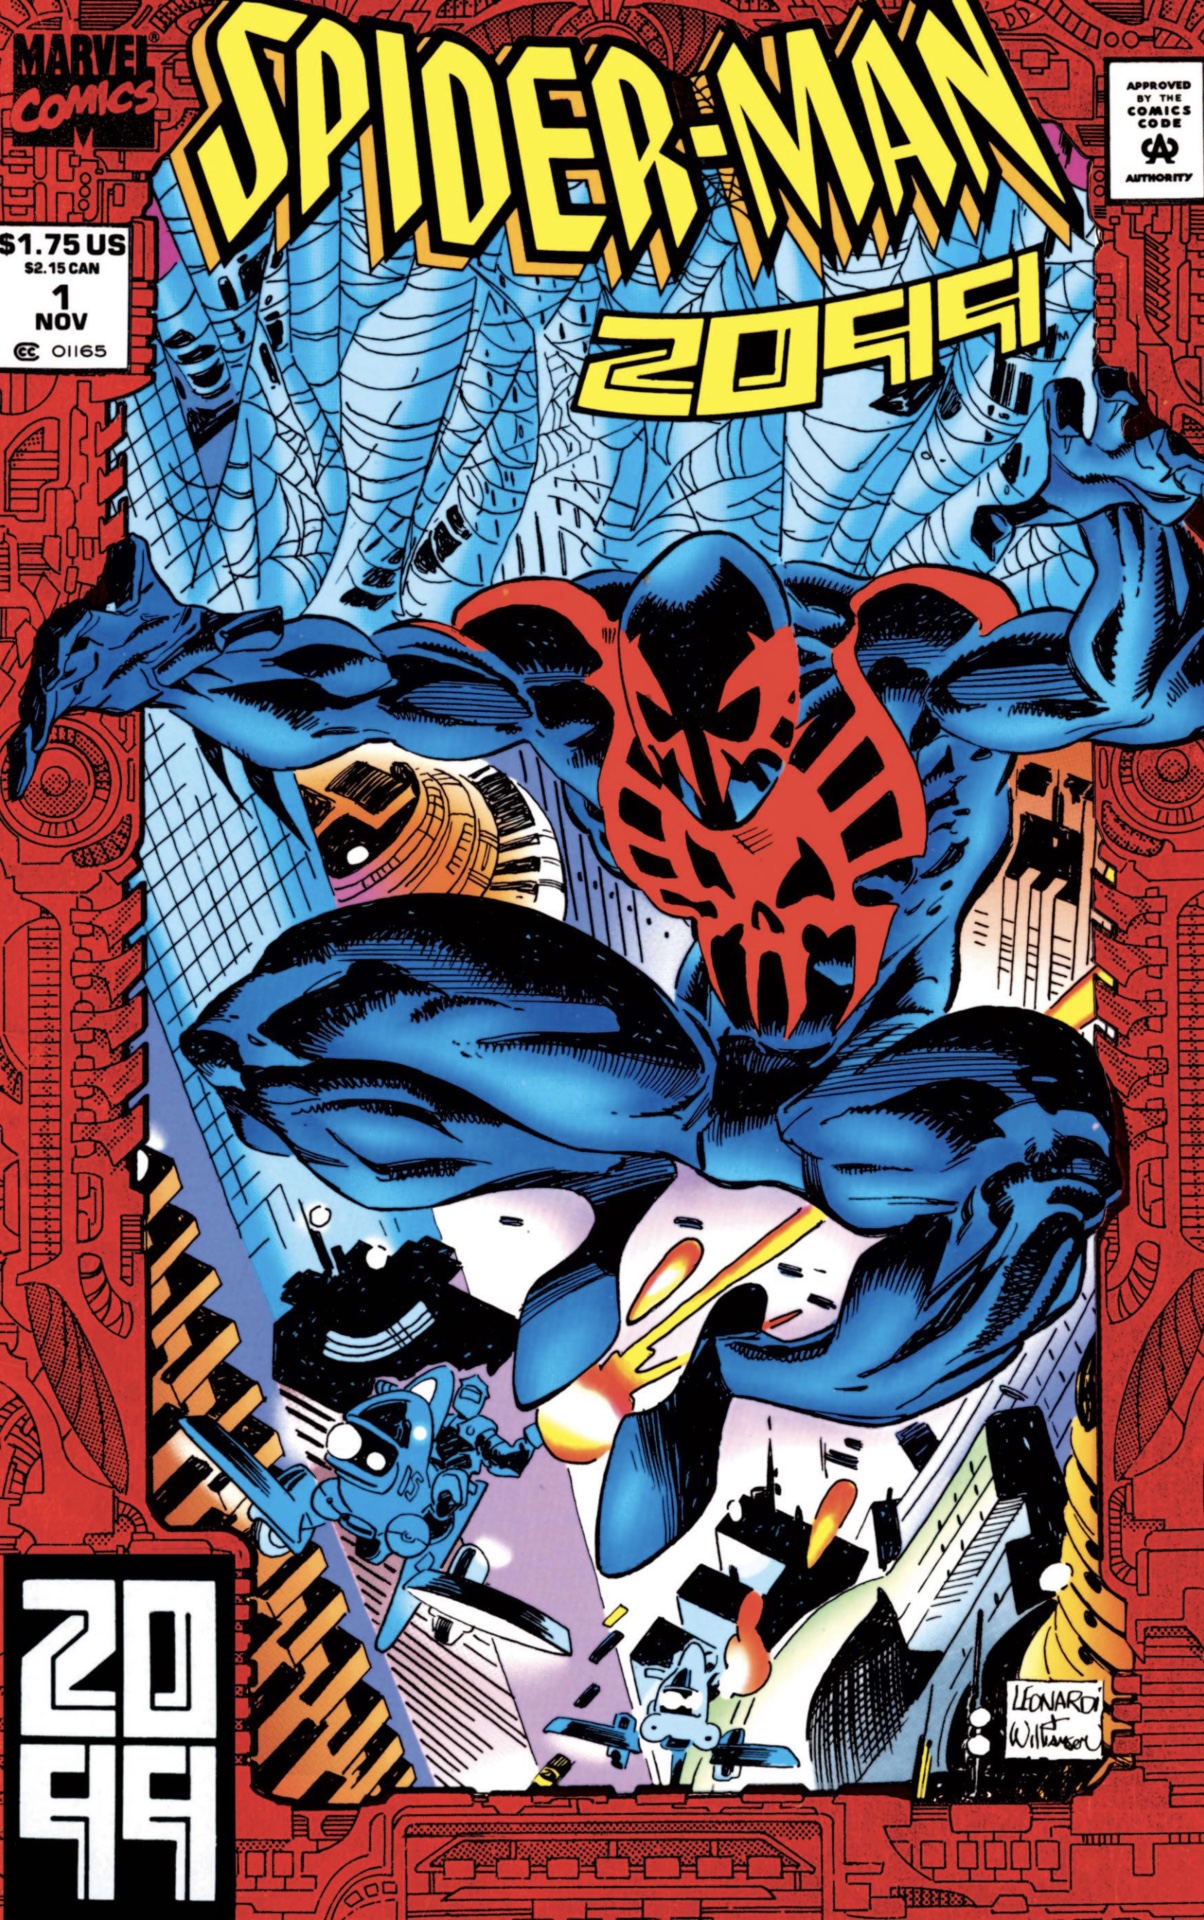 Couverture de Spider-Man 2099 #1